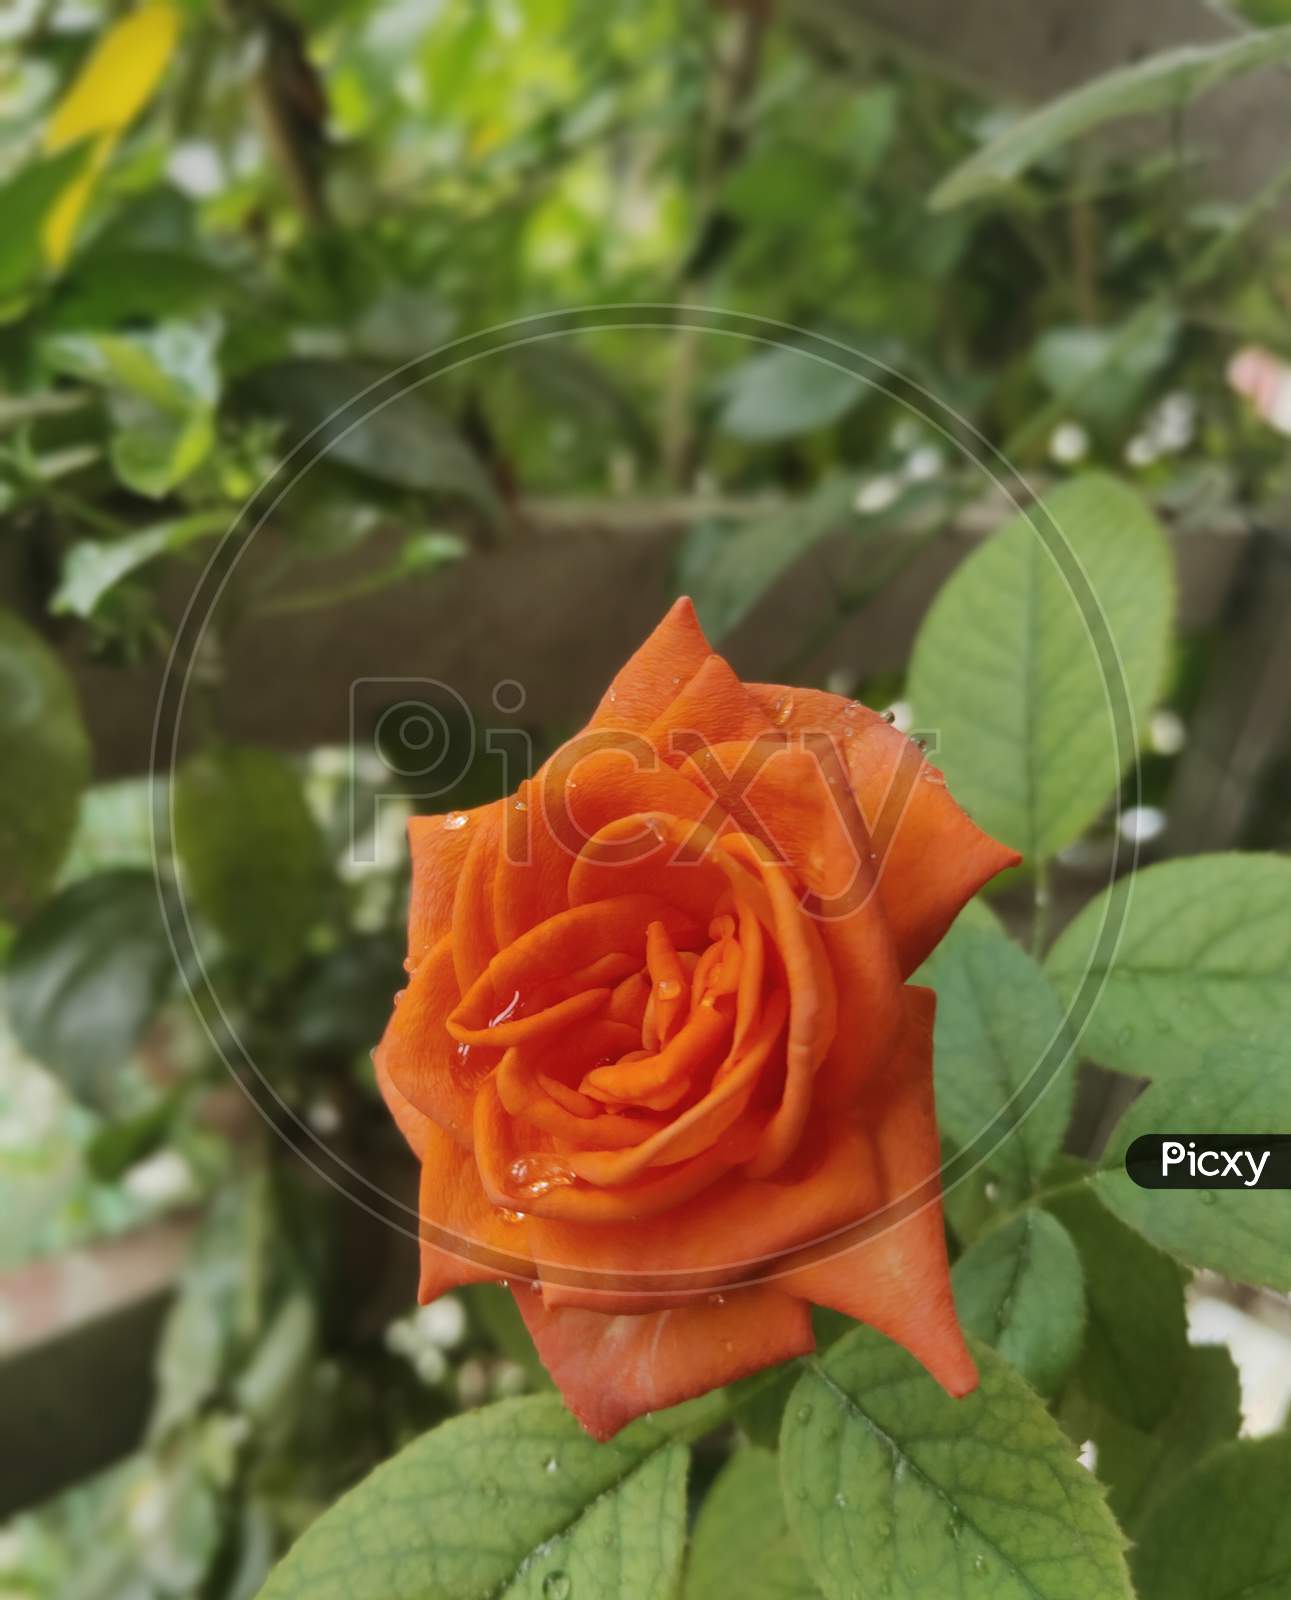 The orange rose.